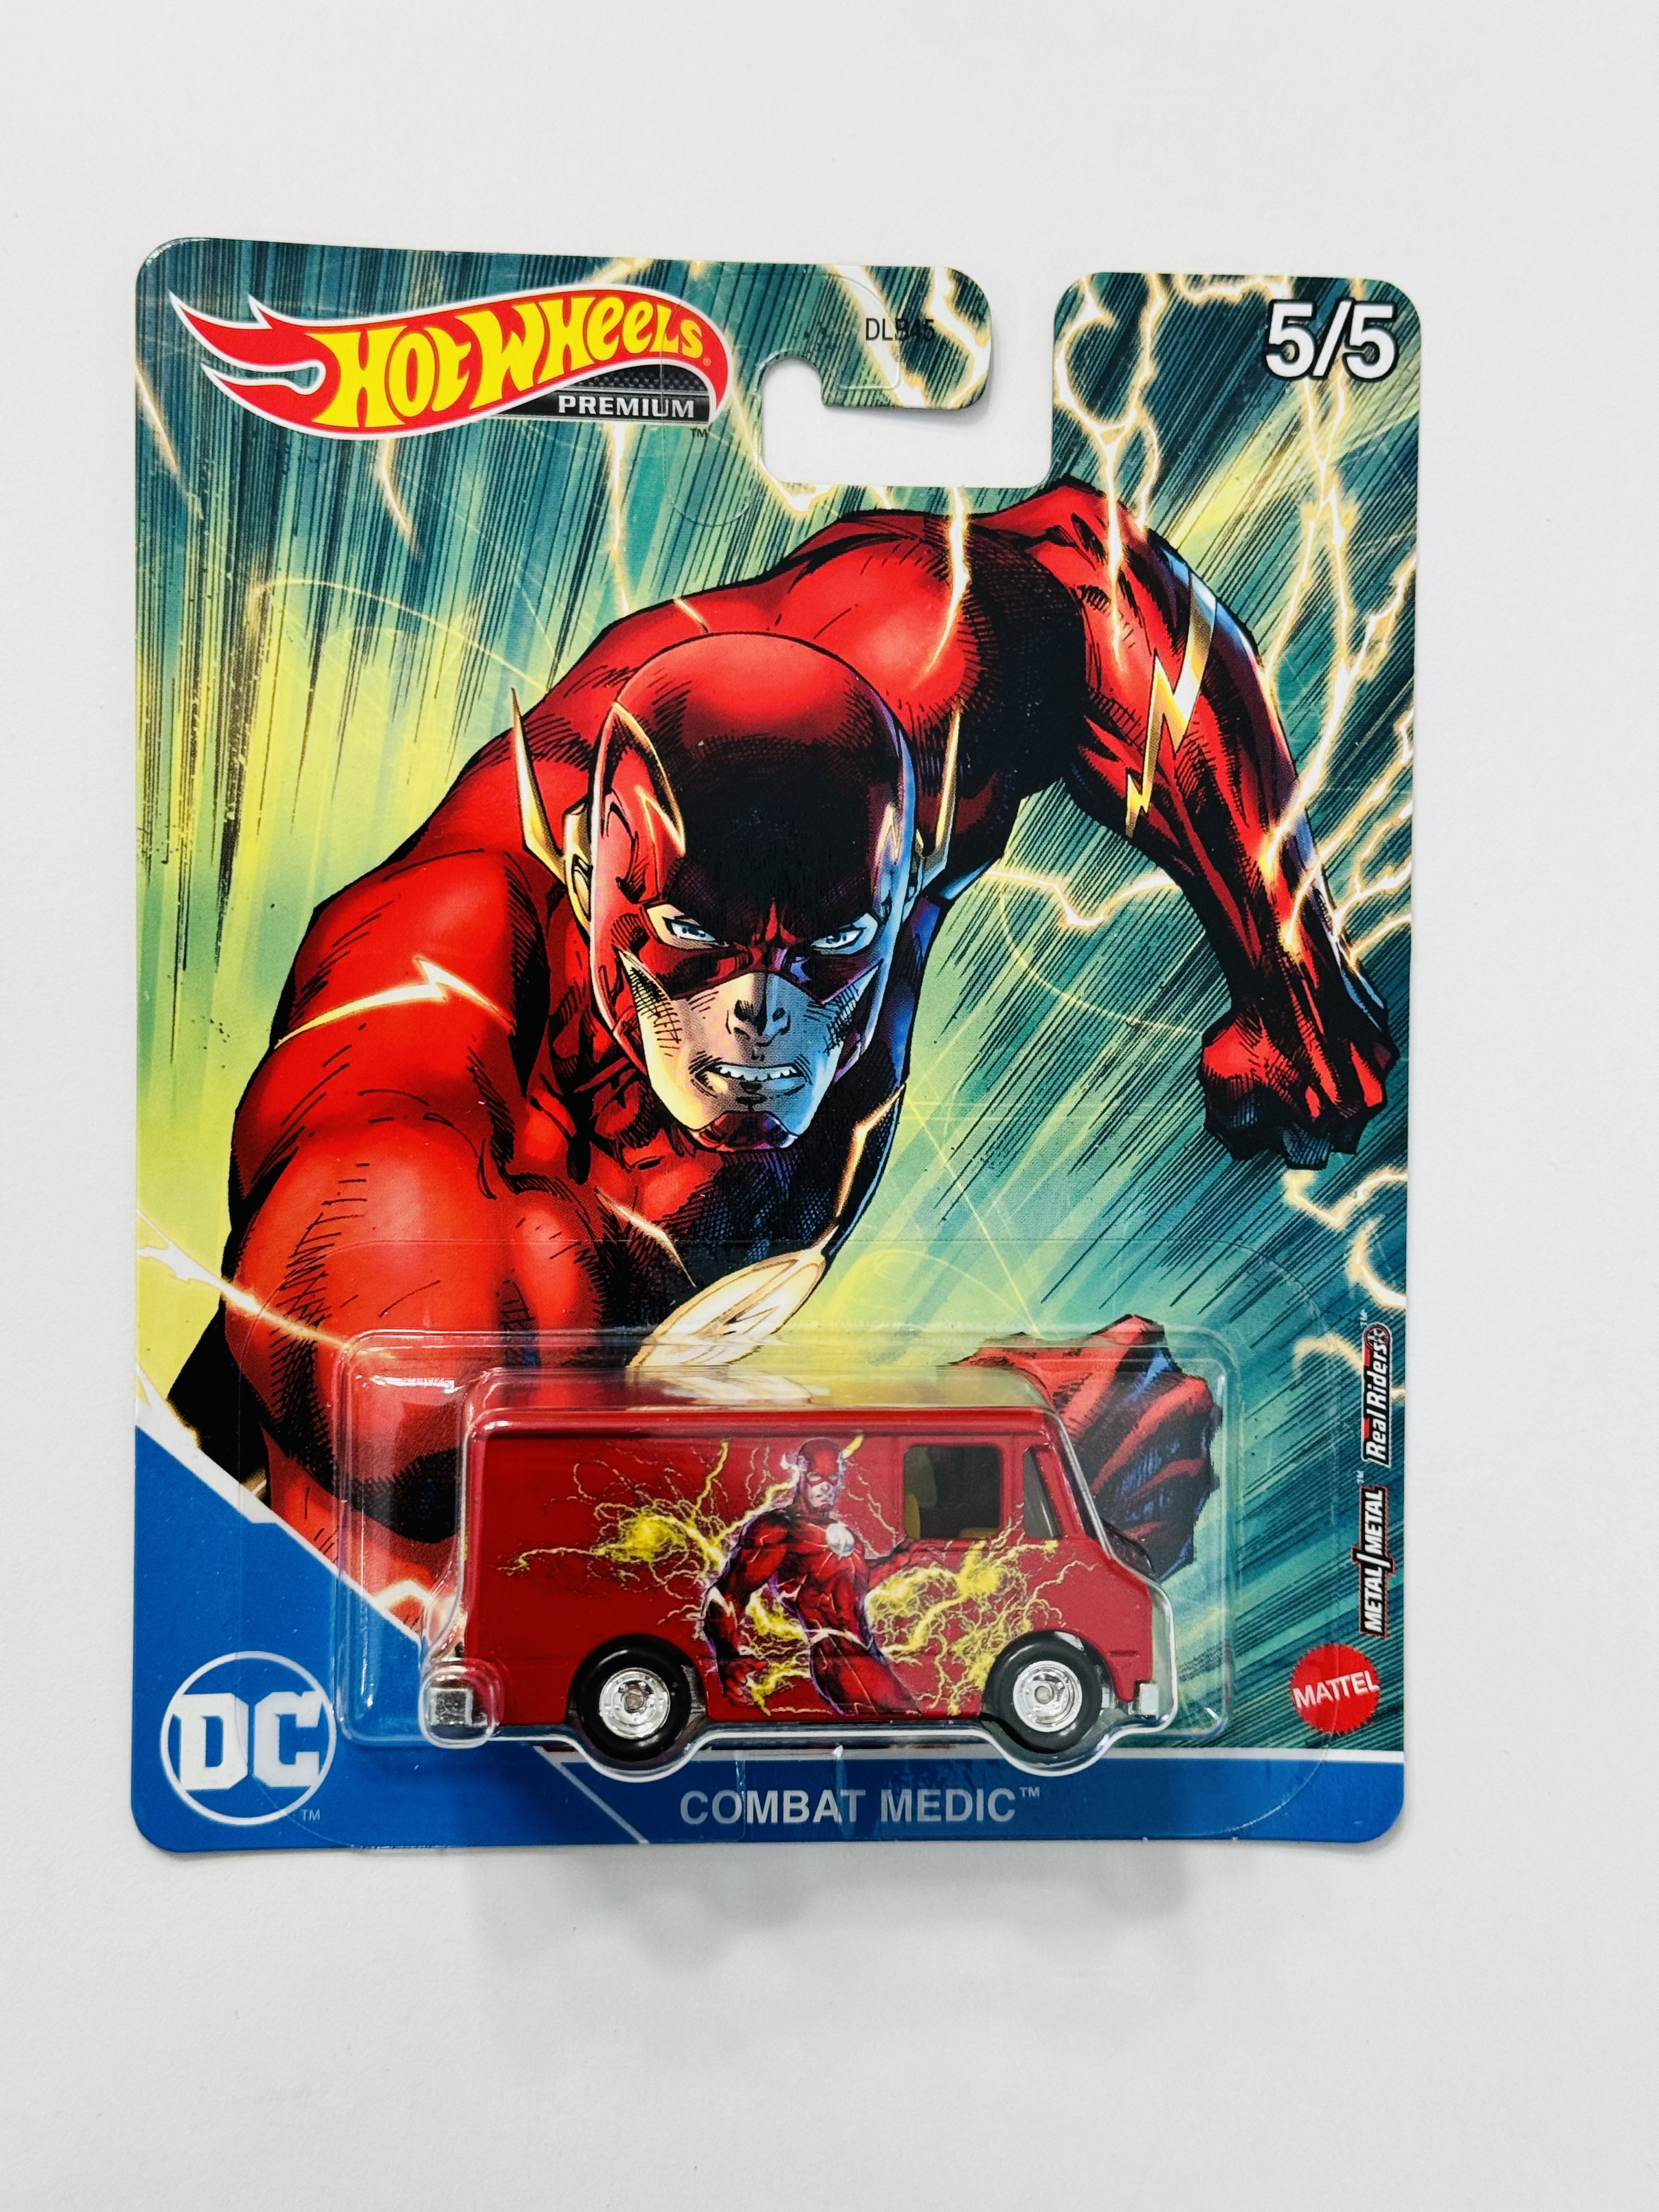 Hot Wheels Premium DC Comics The Flash Combat Medic